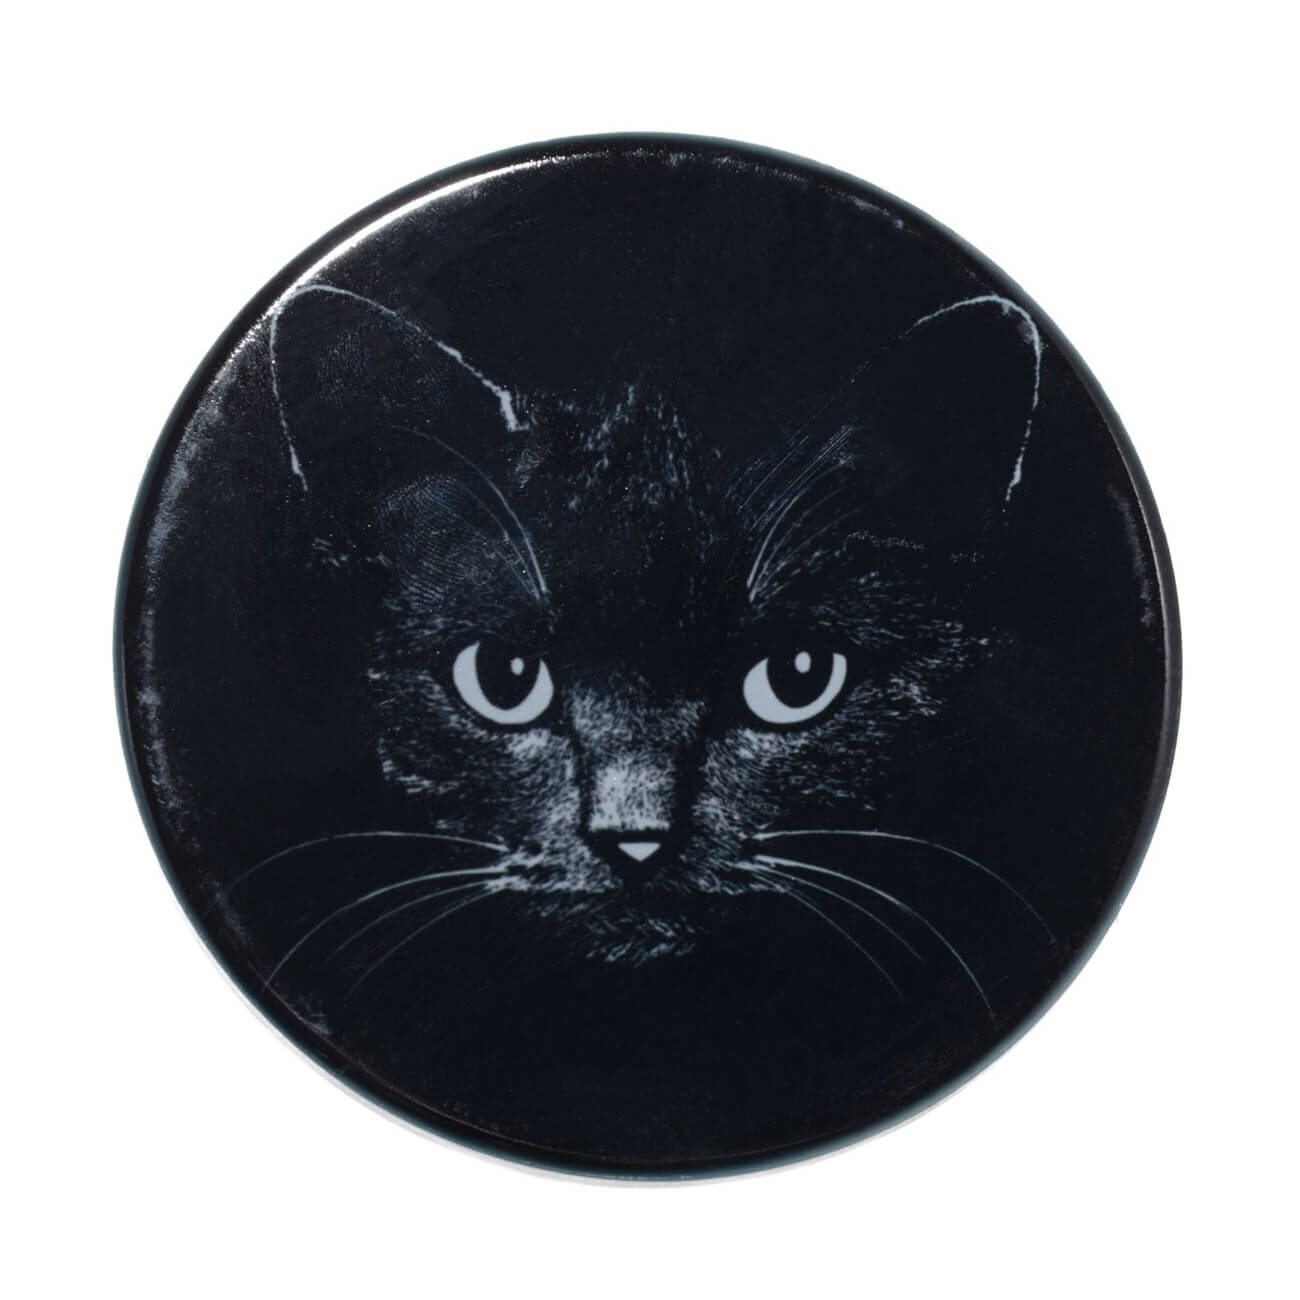 Подставка под кружку, 11x11 см, керамика/пробка, круглая, черная, Ночной кот, Cat night настольная мини подставка для мобильного телефона черная